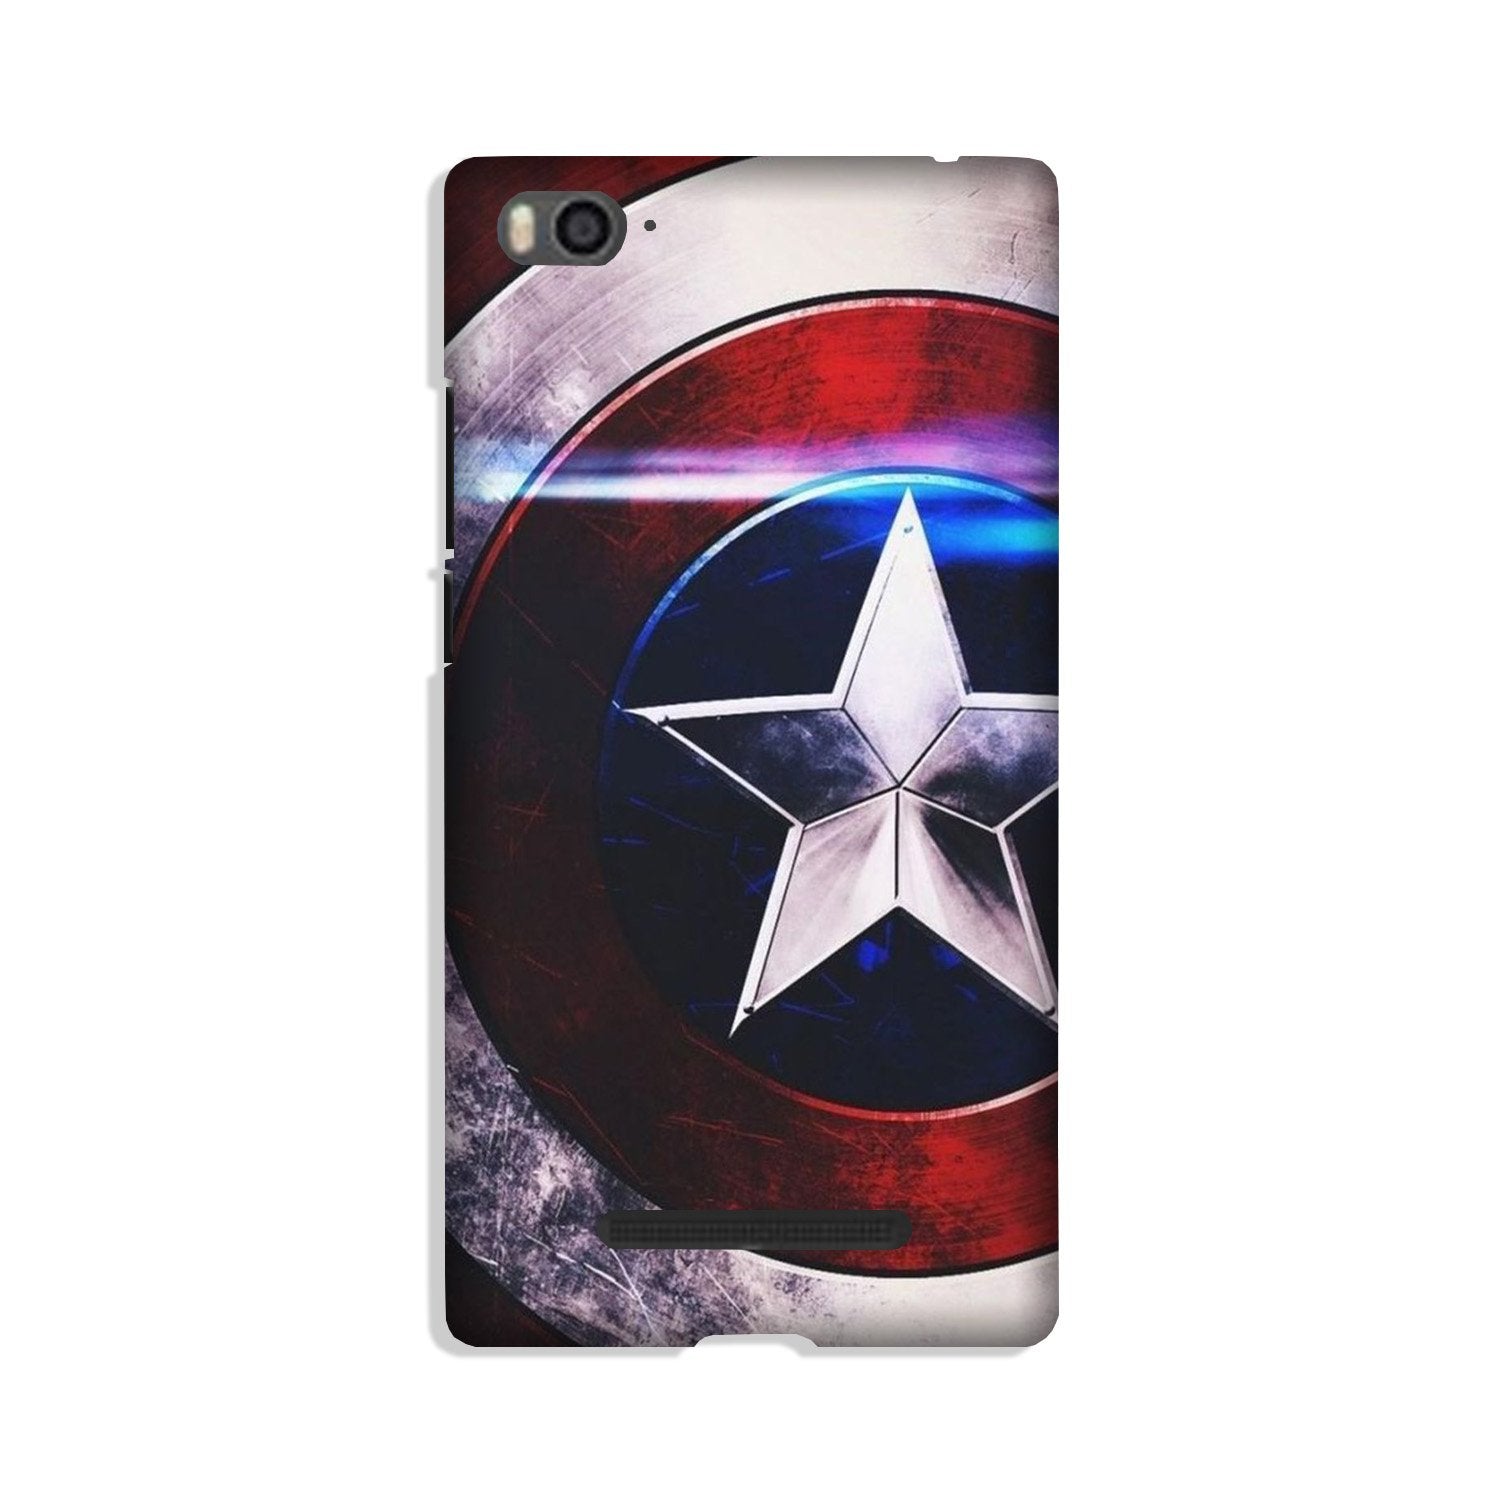 Captain America Shield Case for Xiaomi Redmi 5A (Design No. 250)